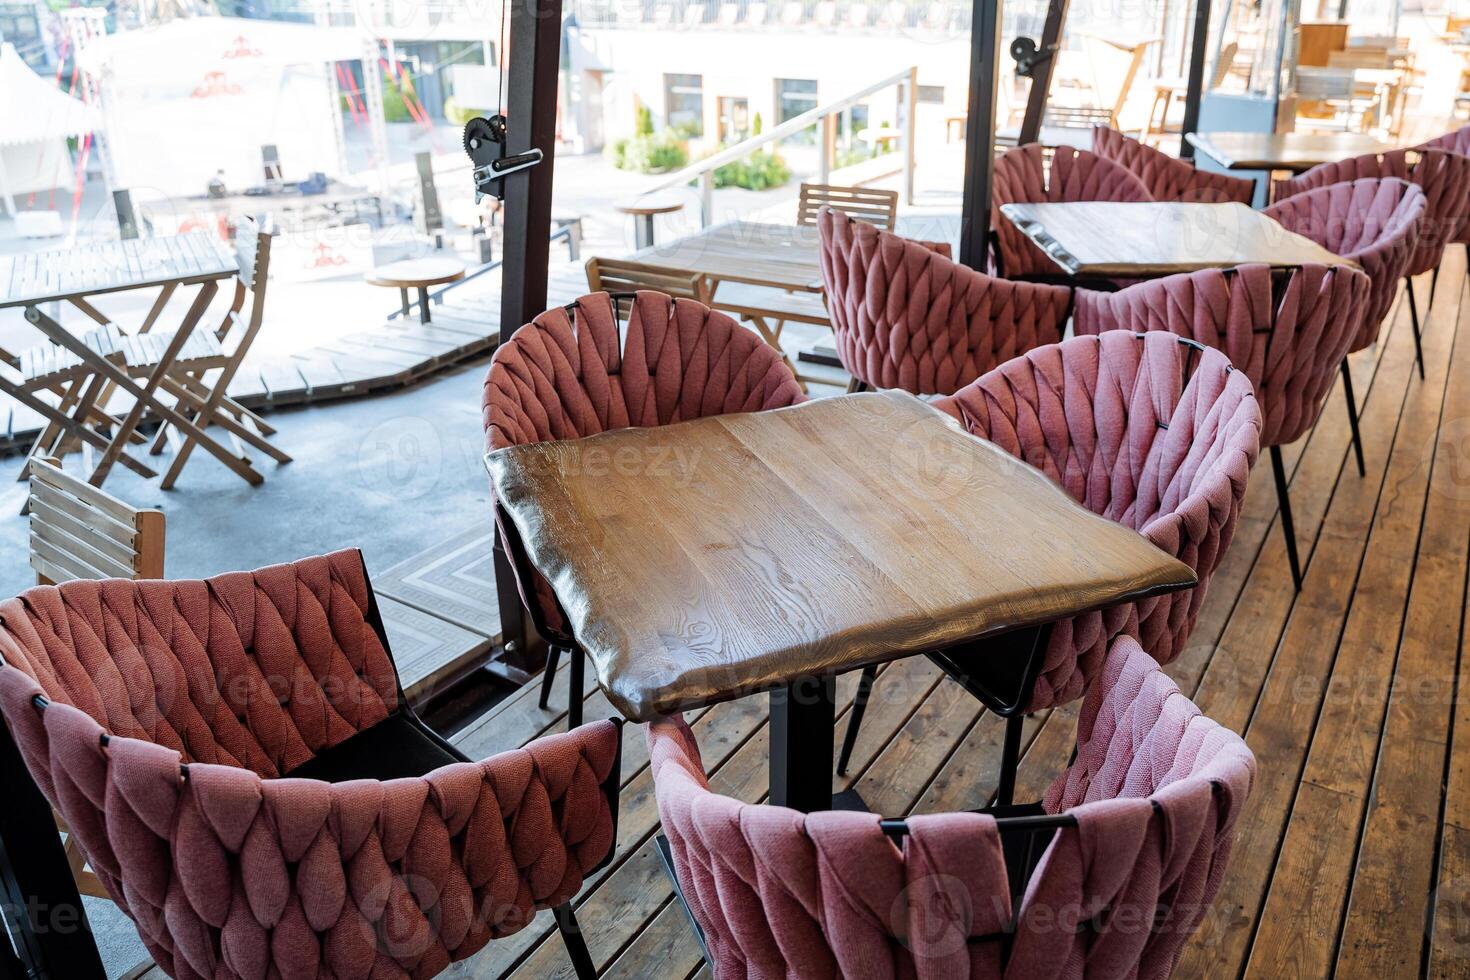 restaurante en el calle, hermosa interior de el café en el ciudad, turista sitio de descansar, Mañana desayuno en el Fresco aire. suave sillones foto